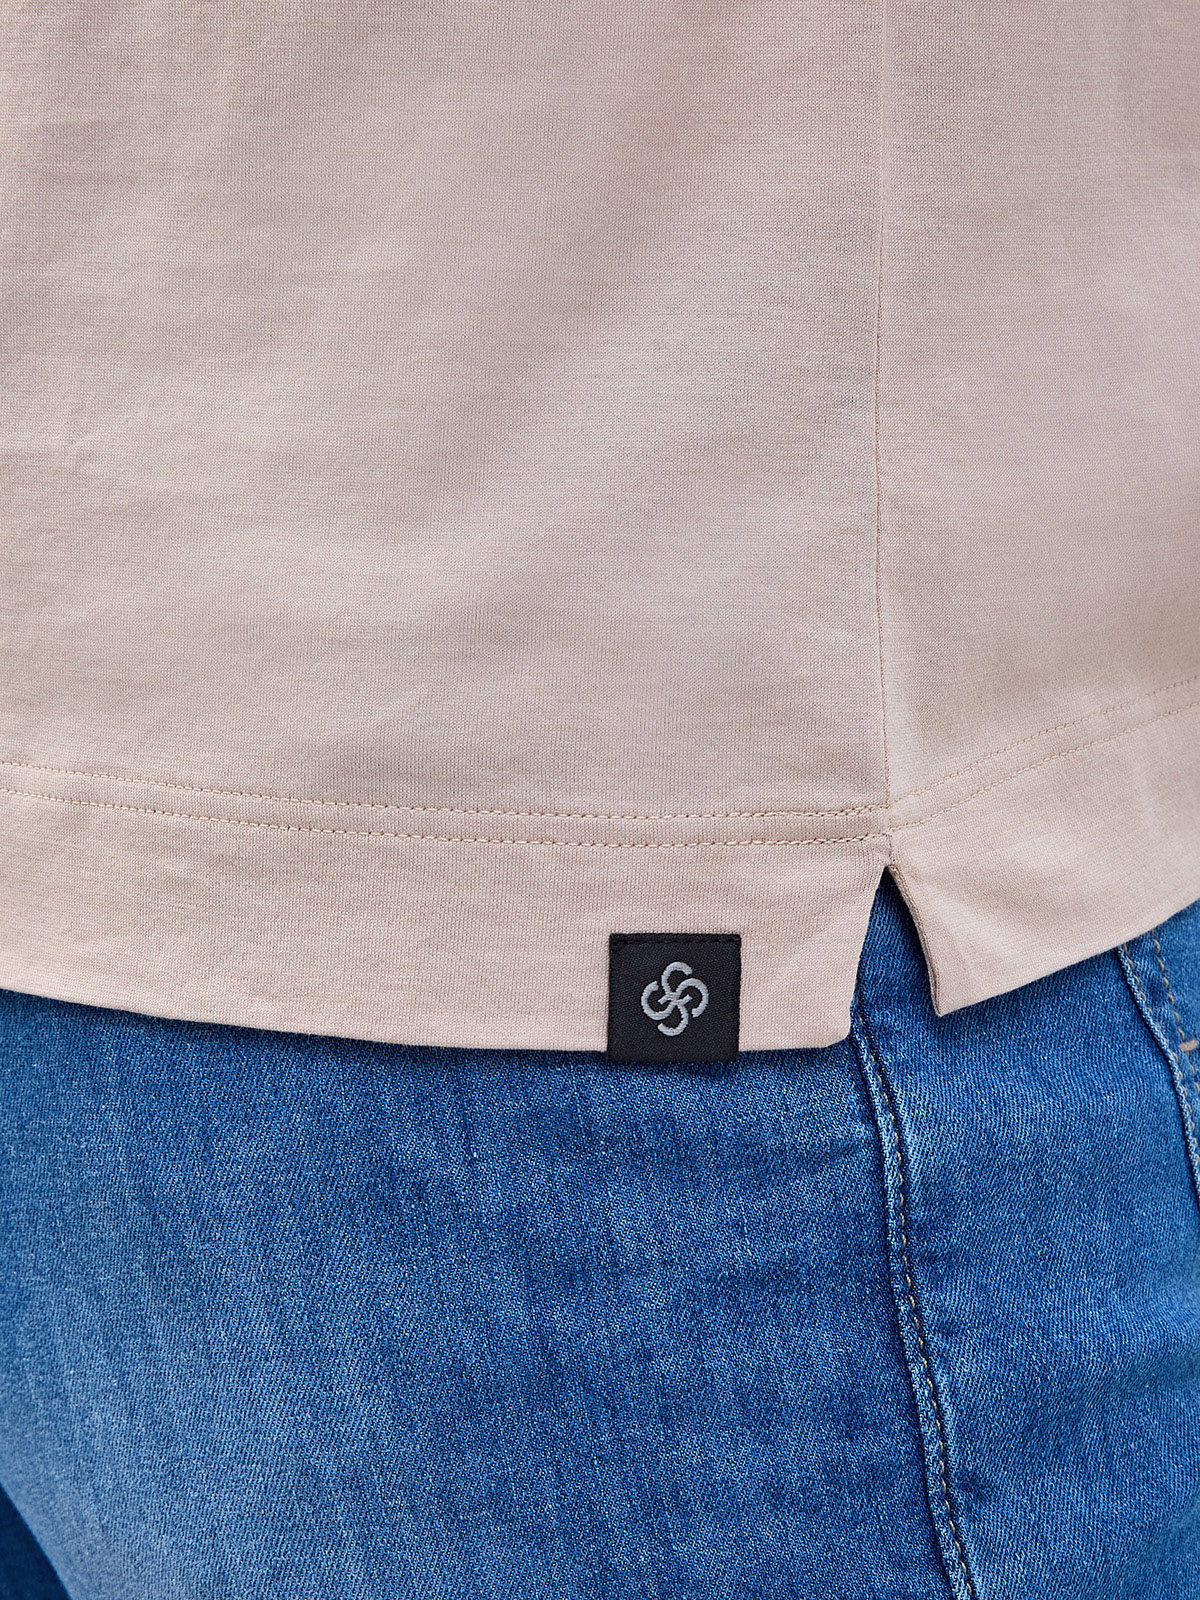 Хлопковая футболка из гладкого джерси с фирменной нашивкой GRAN SASSO, цвет бежевый, размер 48;50;52;54;56;58;60 - фото 5